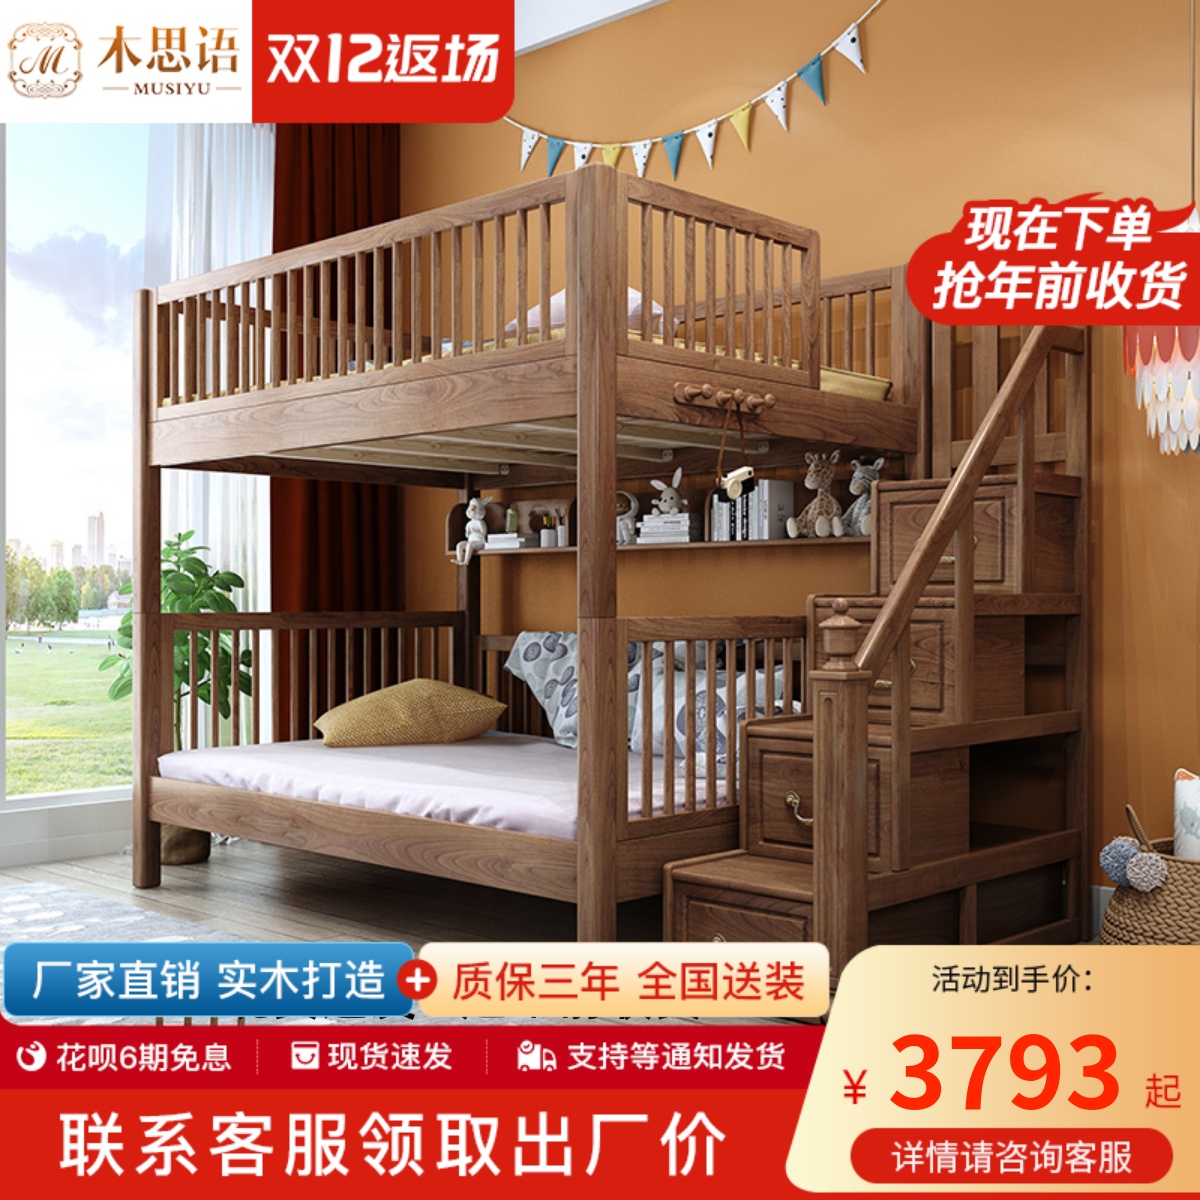 橙饰家居 | 全球一站式家装家居品牌 - 进口橡胶木实木儿童高低床